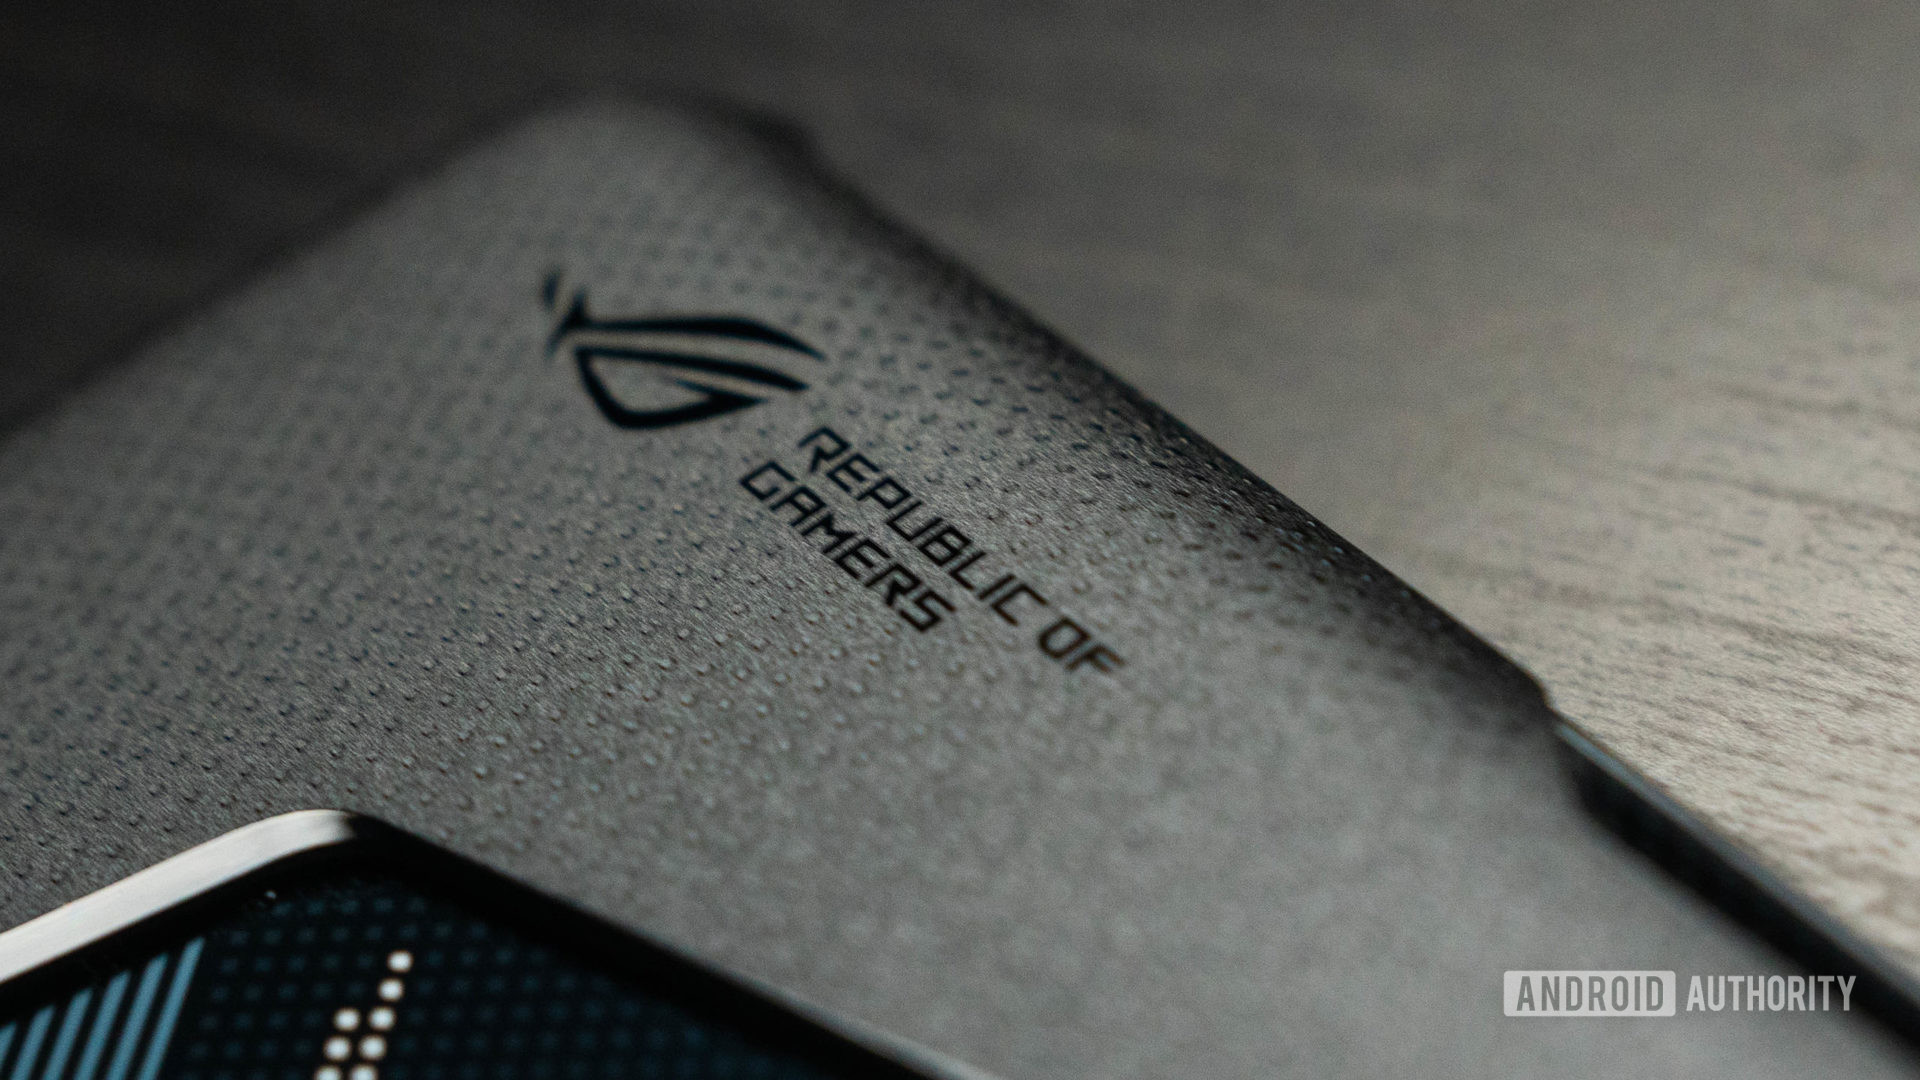 Gambar produk Asus ROG Phone 5 dari logo ROG pada casing yang disertakan